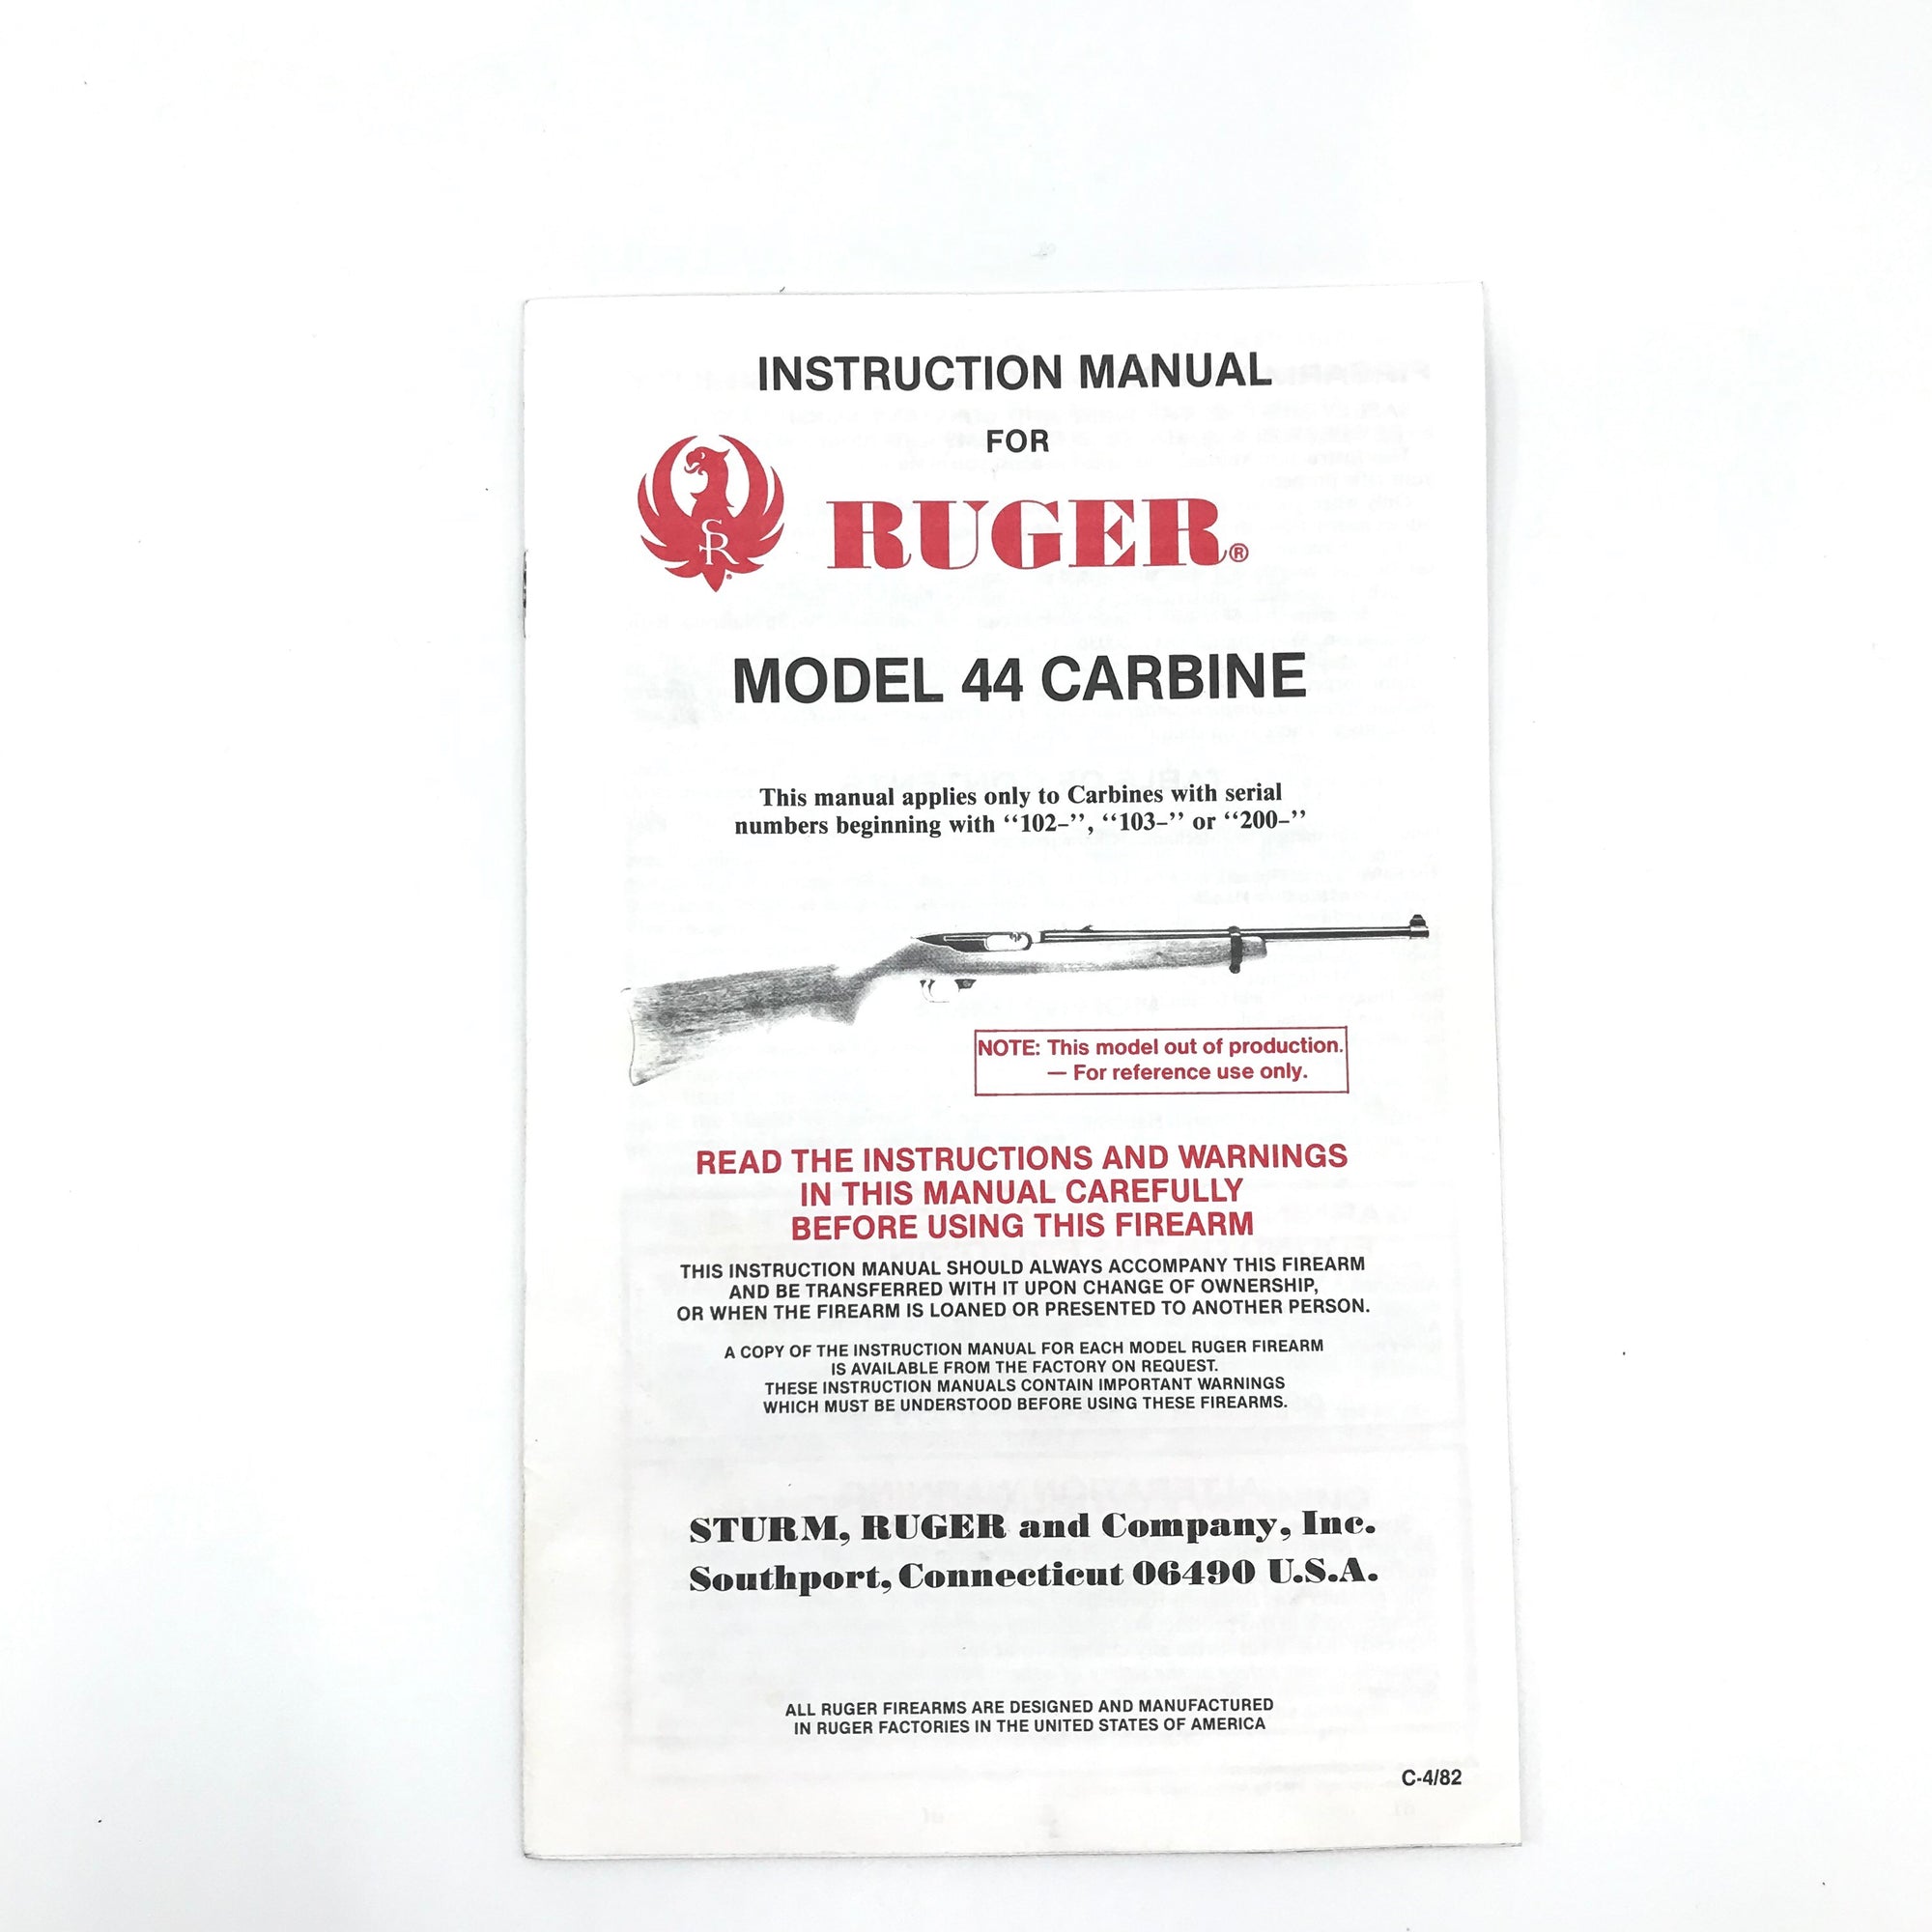 Instruction Manual for Ruger Model 44 Carbine